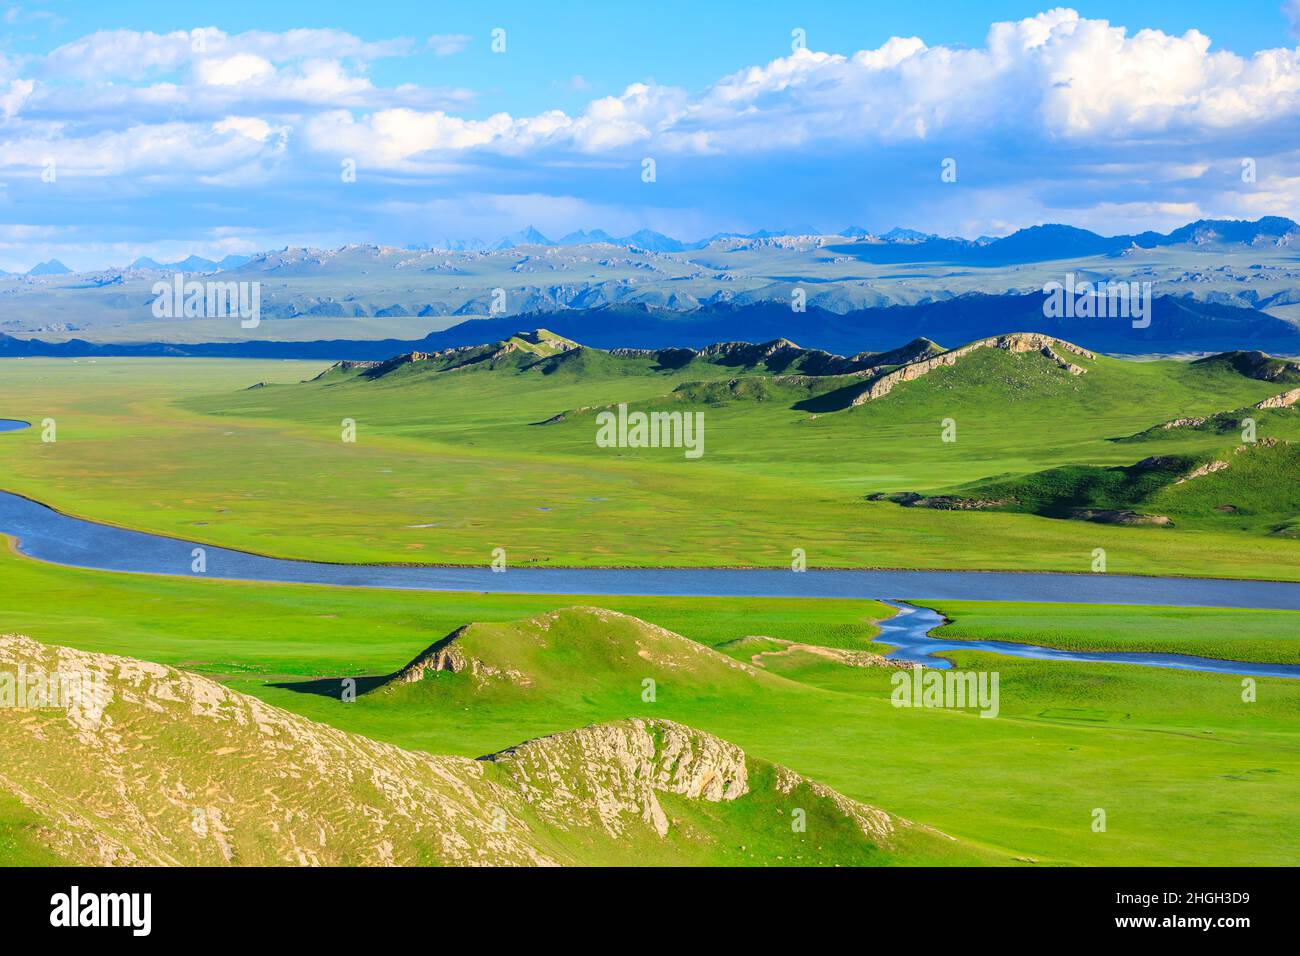 Bayinbuluke Grasland Naturlandschaft in Xinjiang, China.der gewundene Fluss liegt auf dem grünen Grasland. Stockfoto